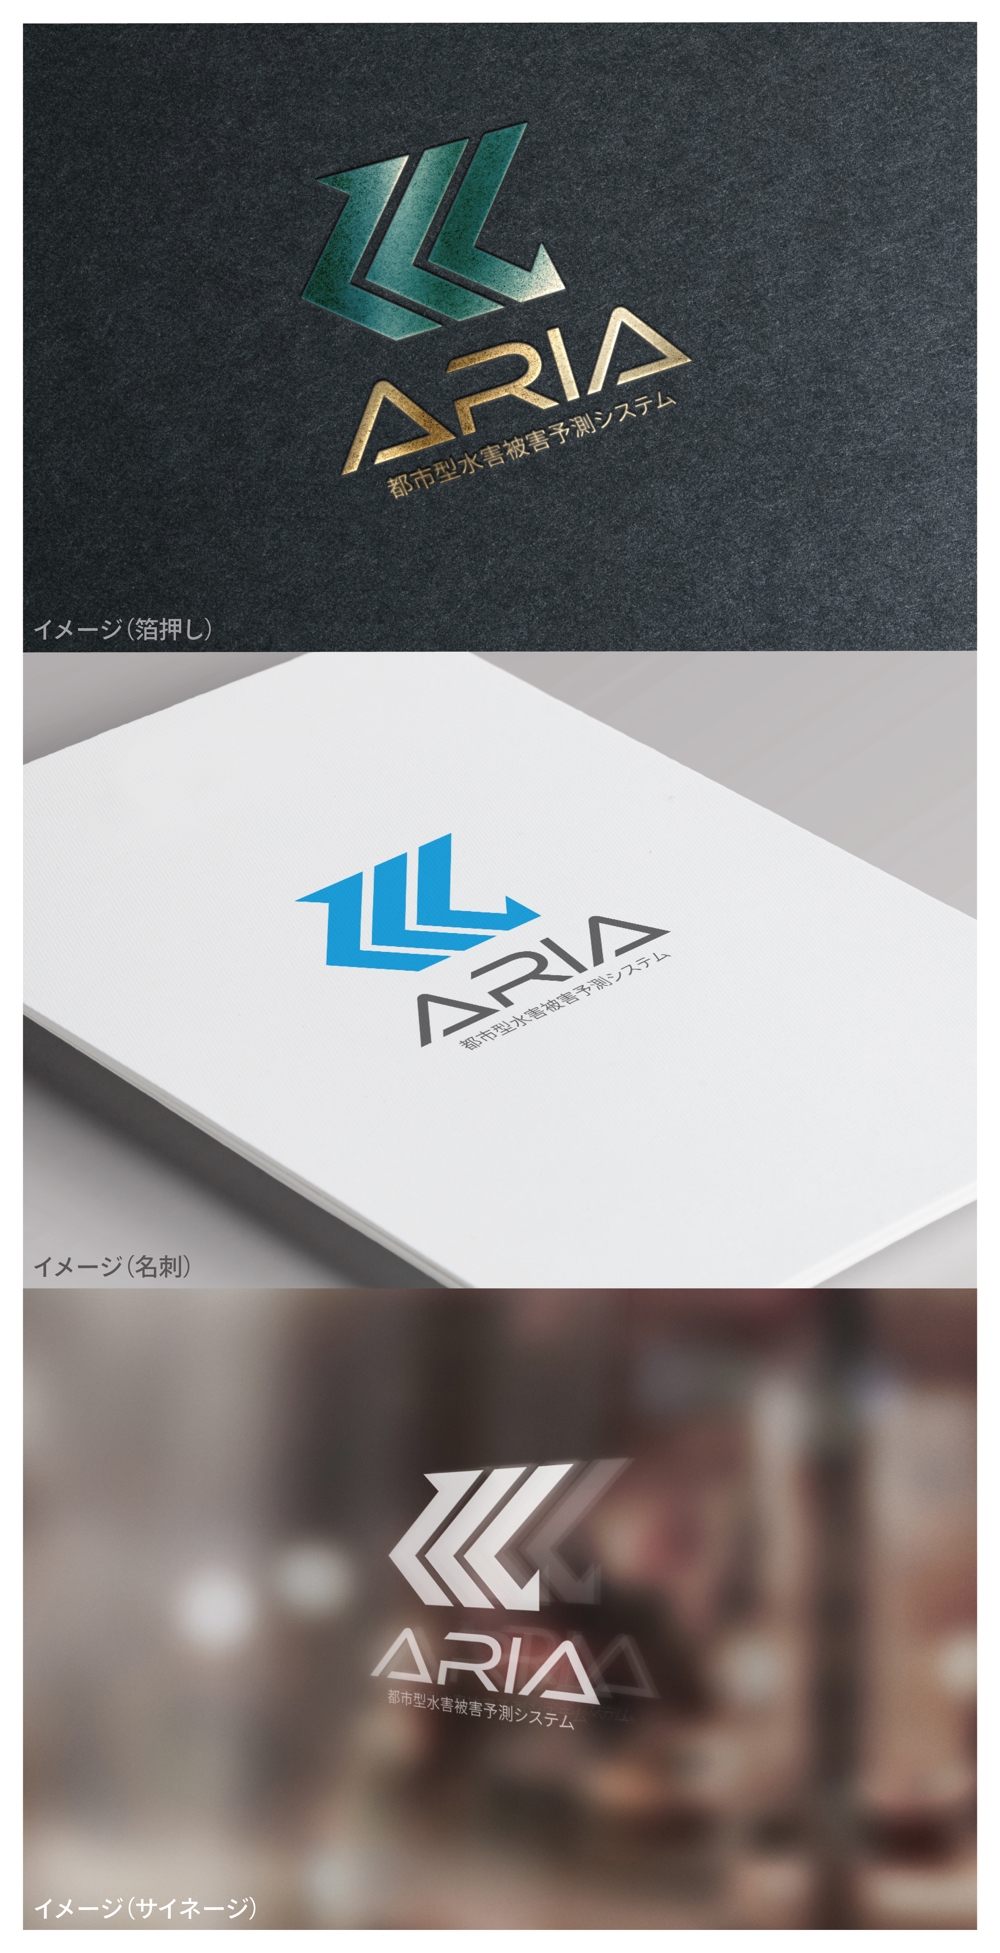 ARIA_logo02_01.jpg